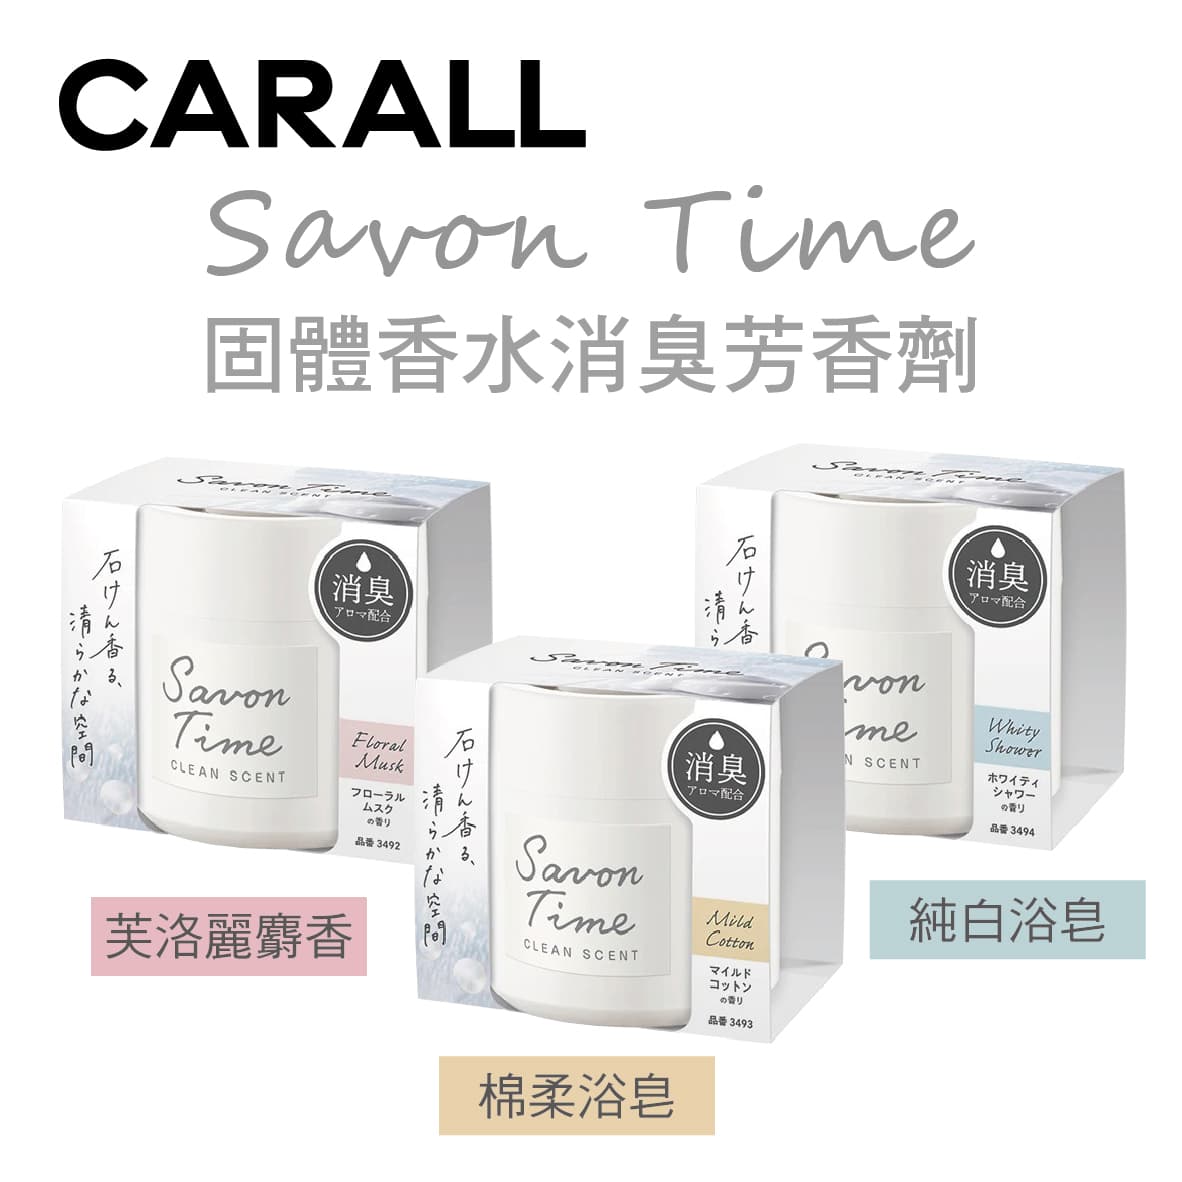 真便宜 CARALL Savon Time 固體香水消臭芳香劑100g